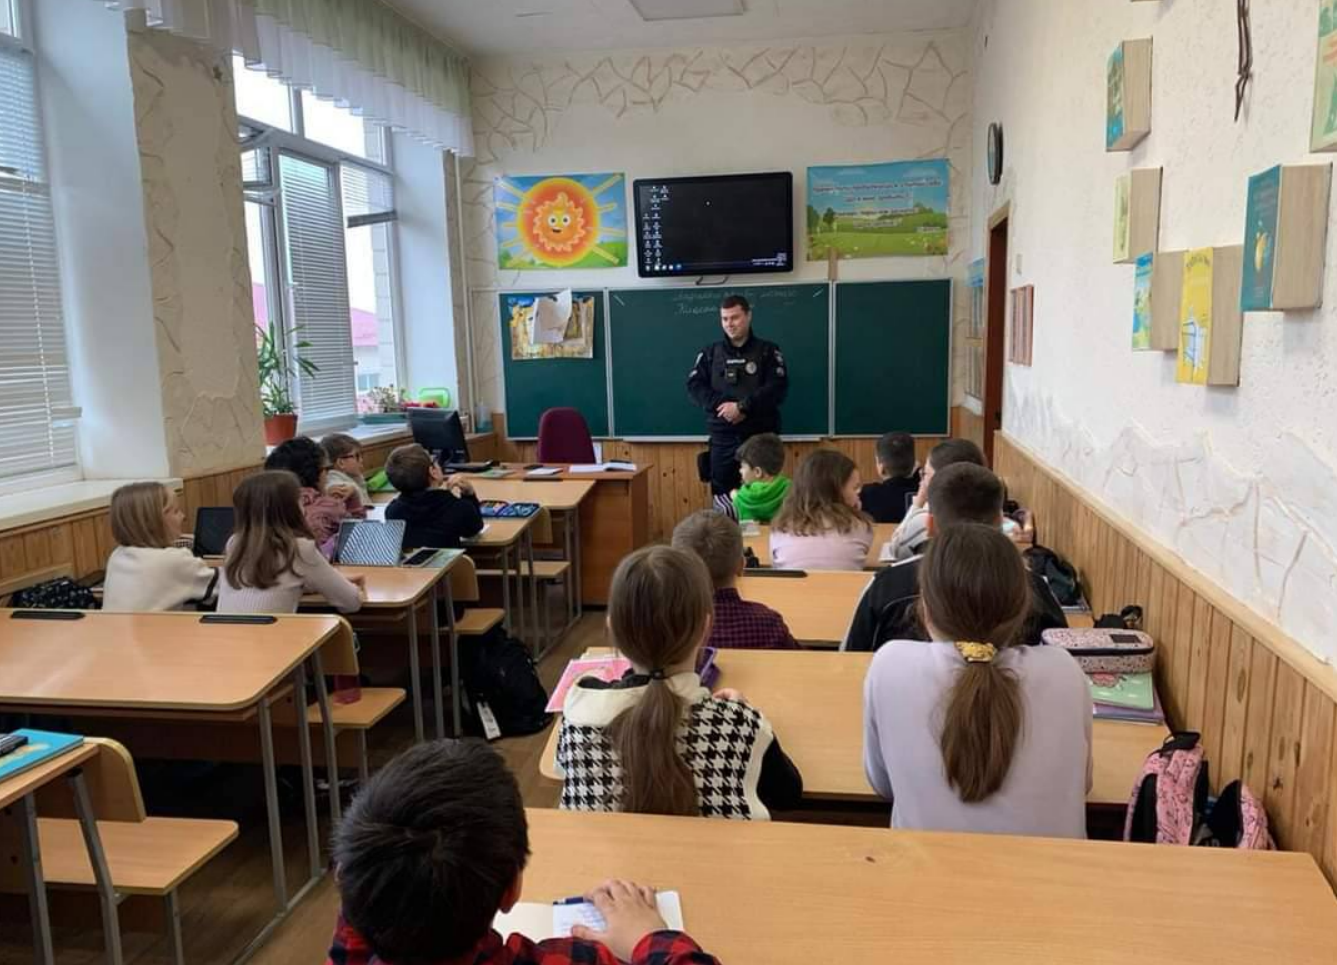  У 94 школах Київщини працюватимуть офіцери безпеки: де саме